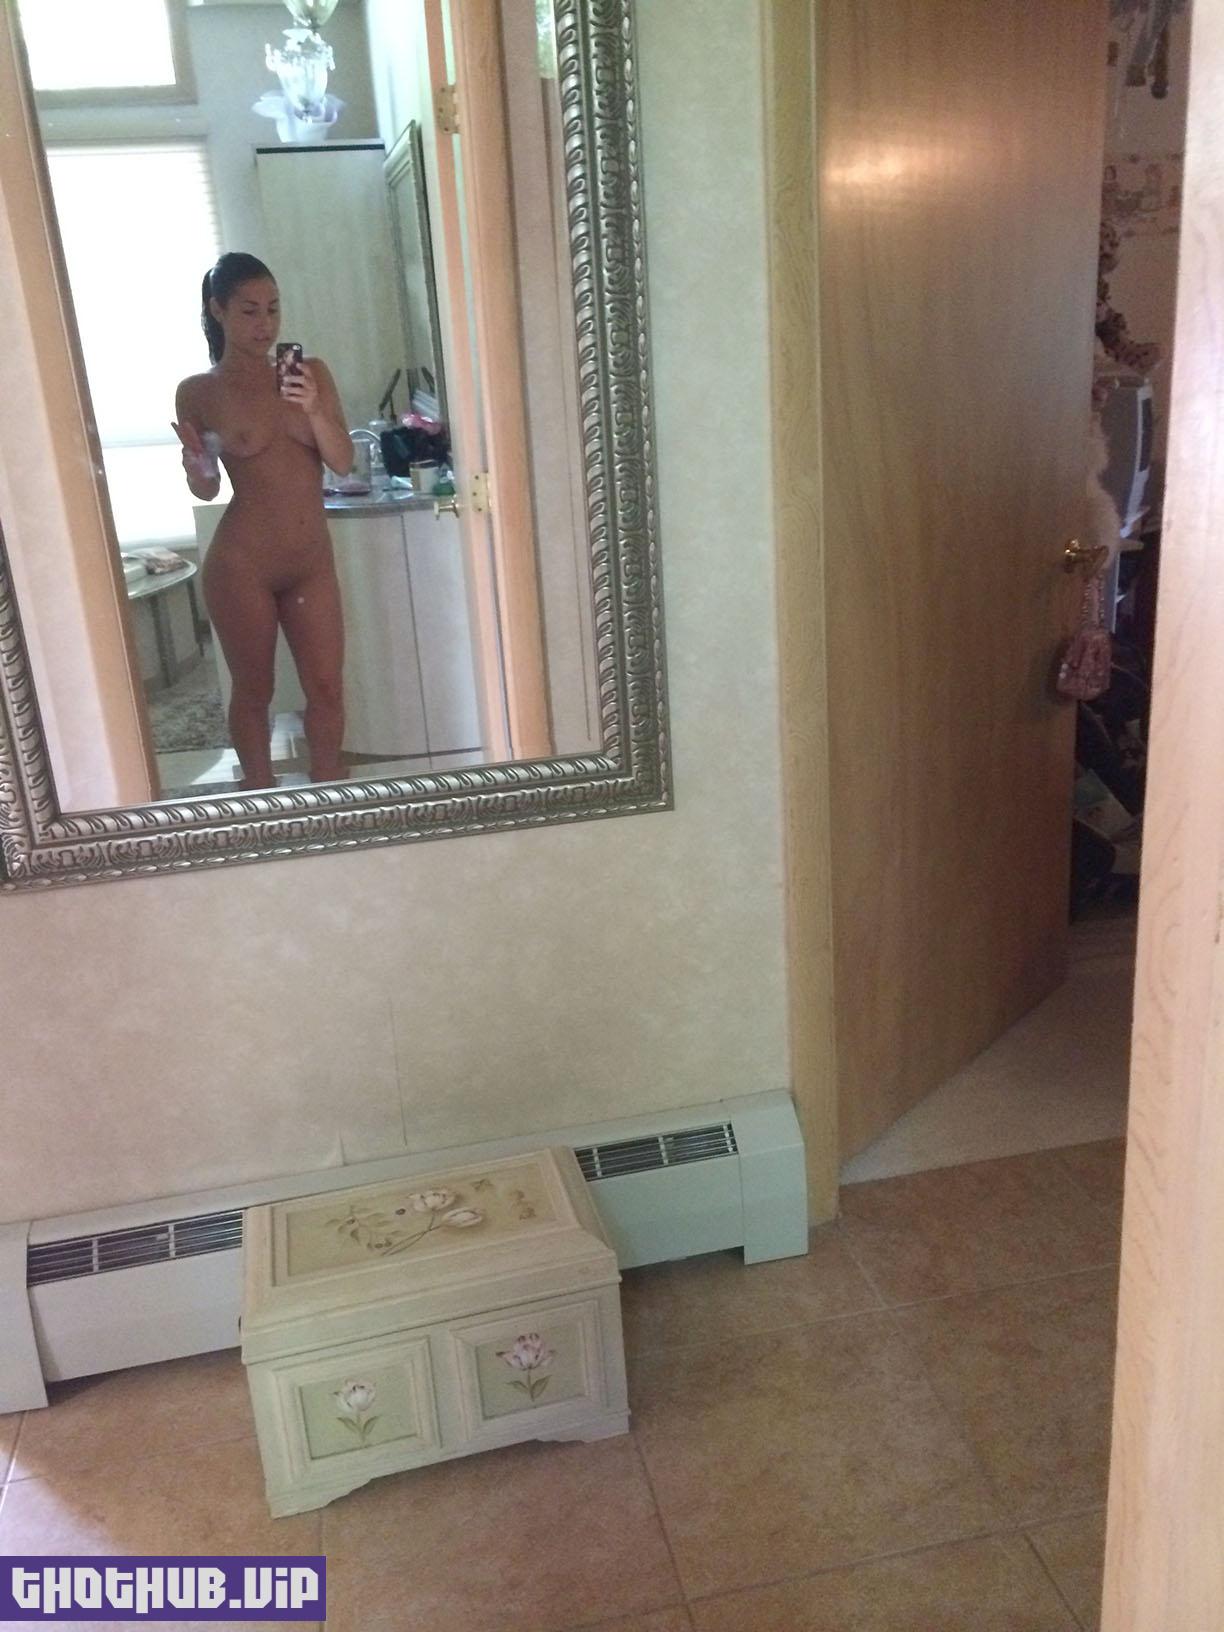 Patriots Cheerleader Jodi Ricci Leaked Nude Selfies